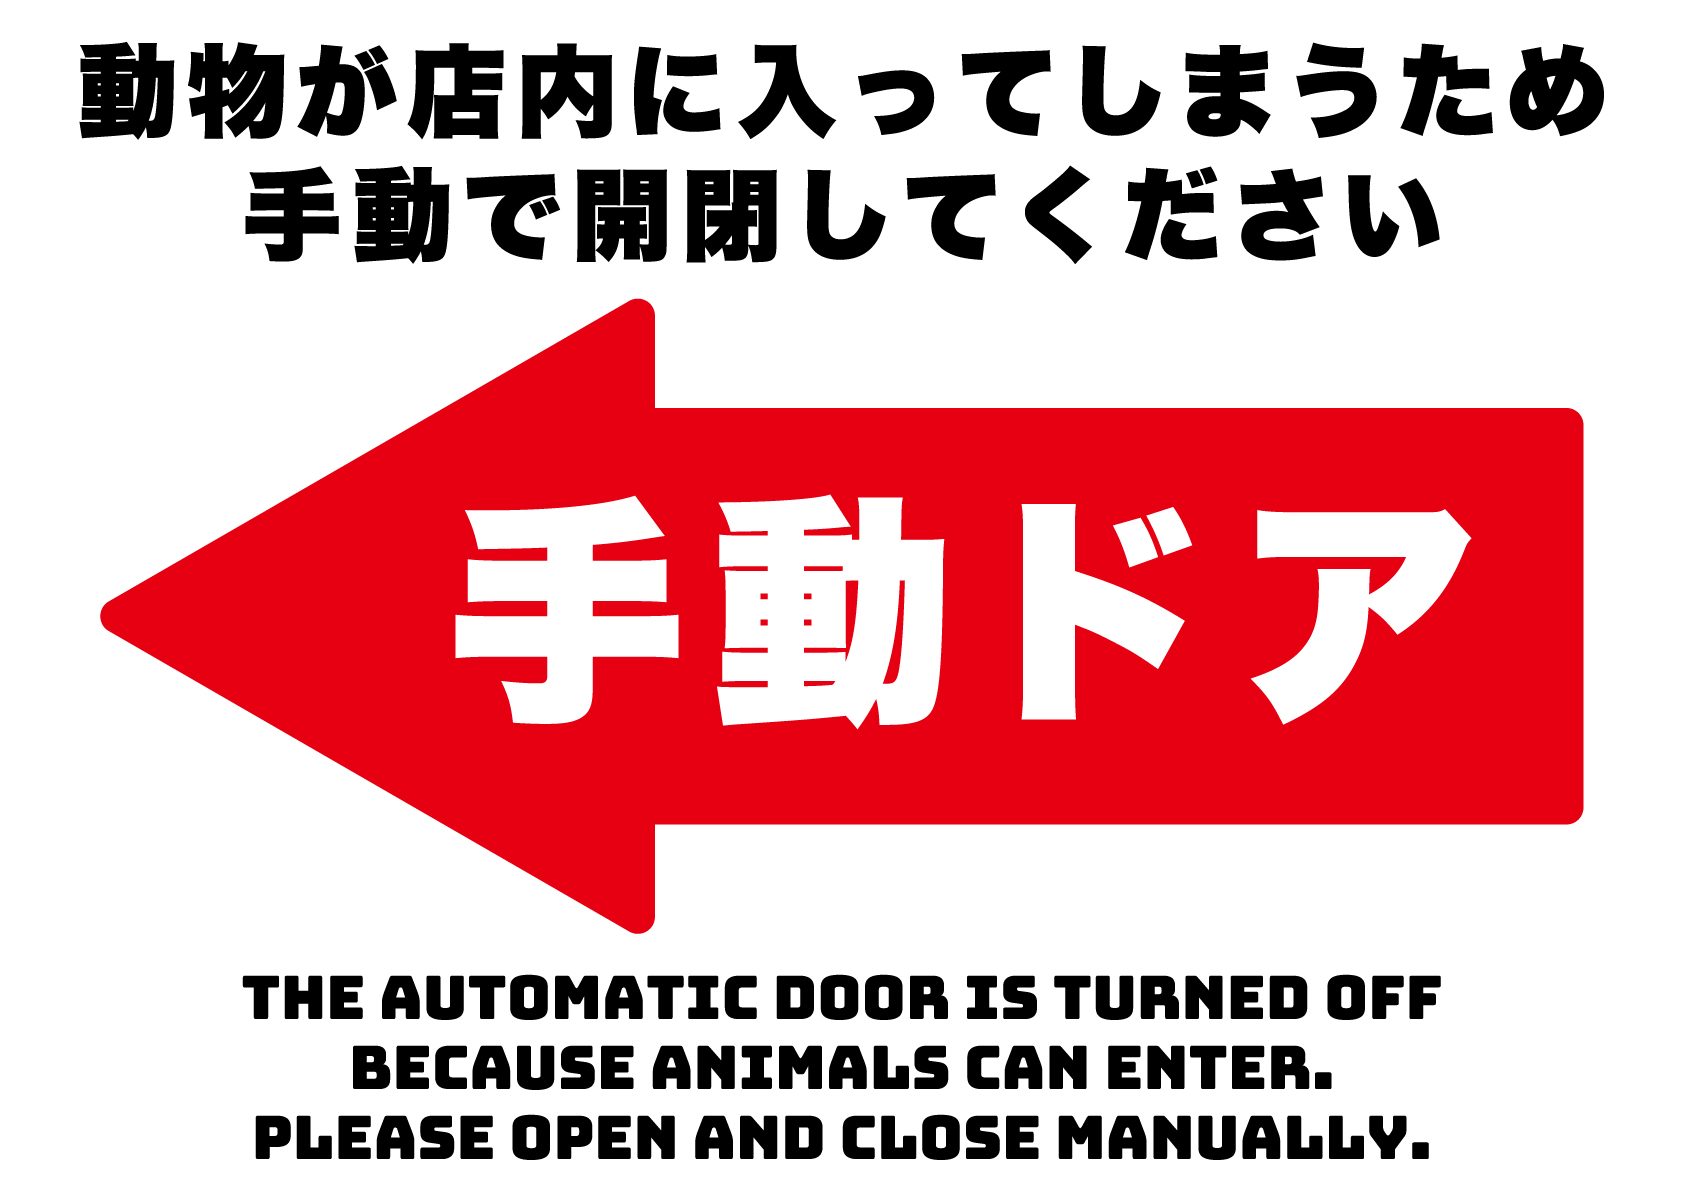 動物が入るのでドアは手動で開けてください（左）の張り紙